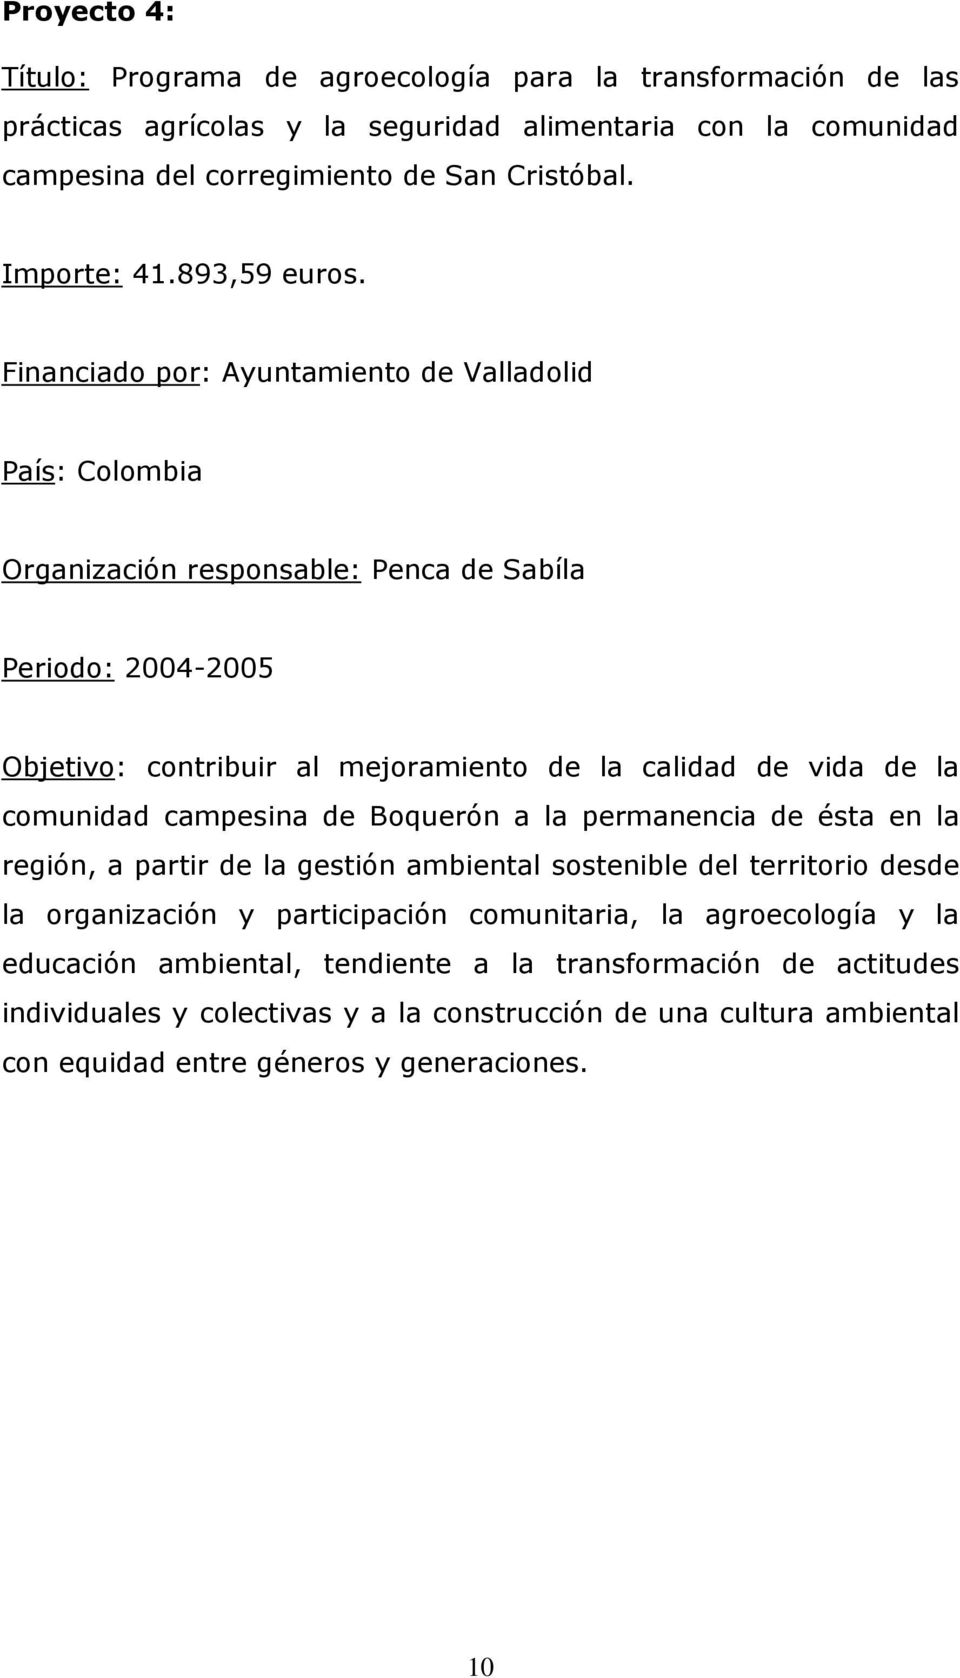 Financiado por: Ayuntamiento de Valladolid País: Colombia Organización responsable: Penca de Sabíla Periodo: 2004-2005 Objetivo: contribuir al mejoramiento de la calidad de vida de la comunidad